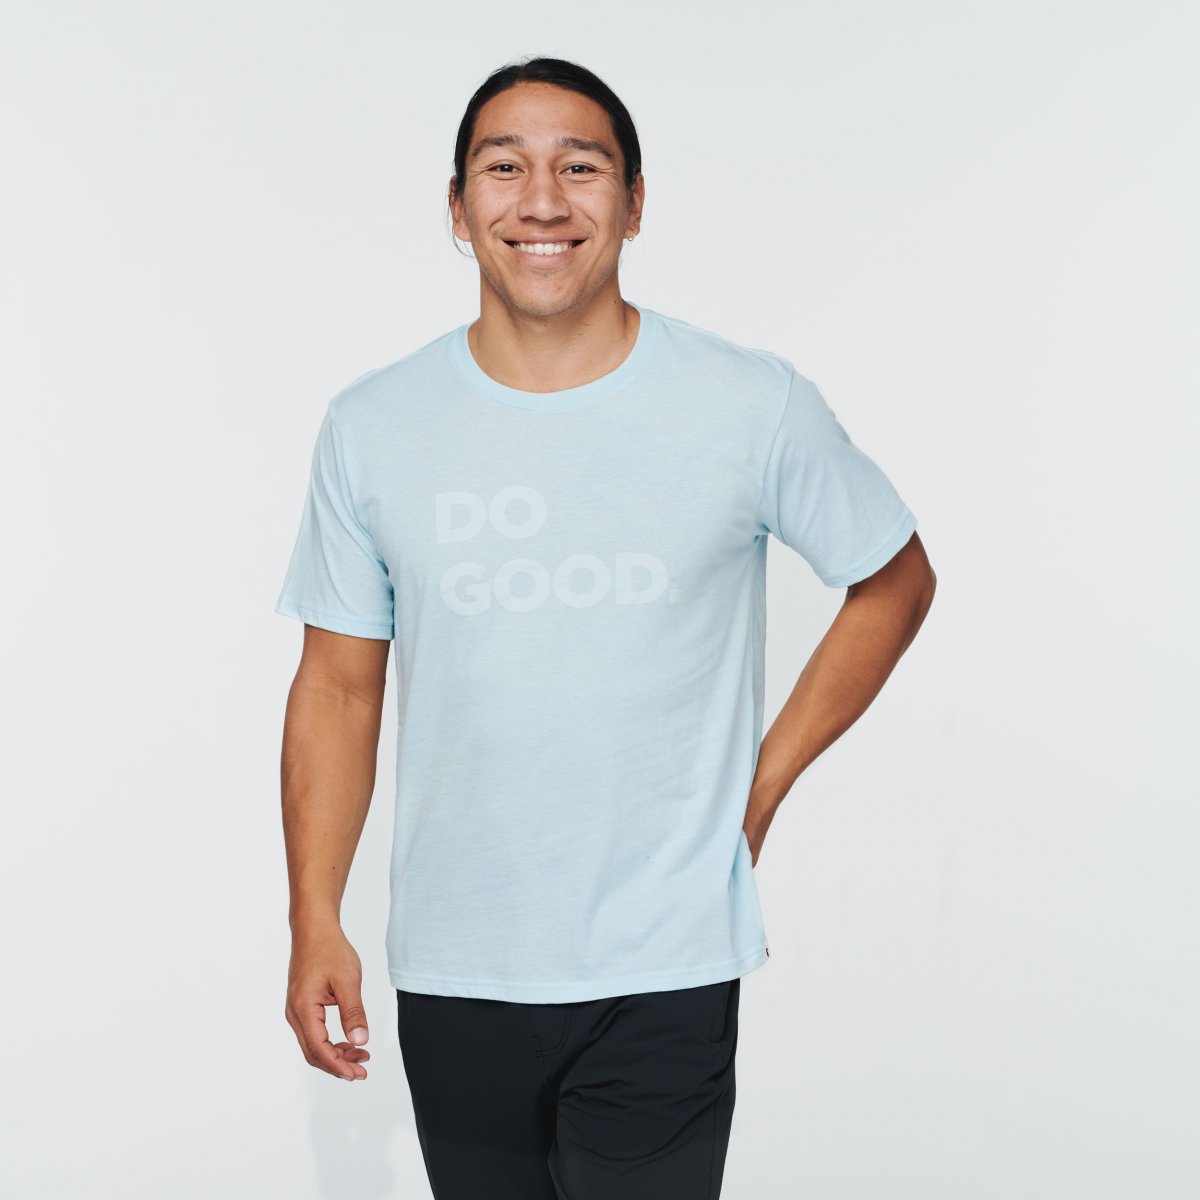 Do Good T-Shirt  M